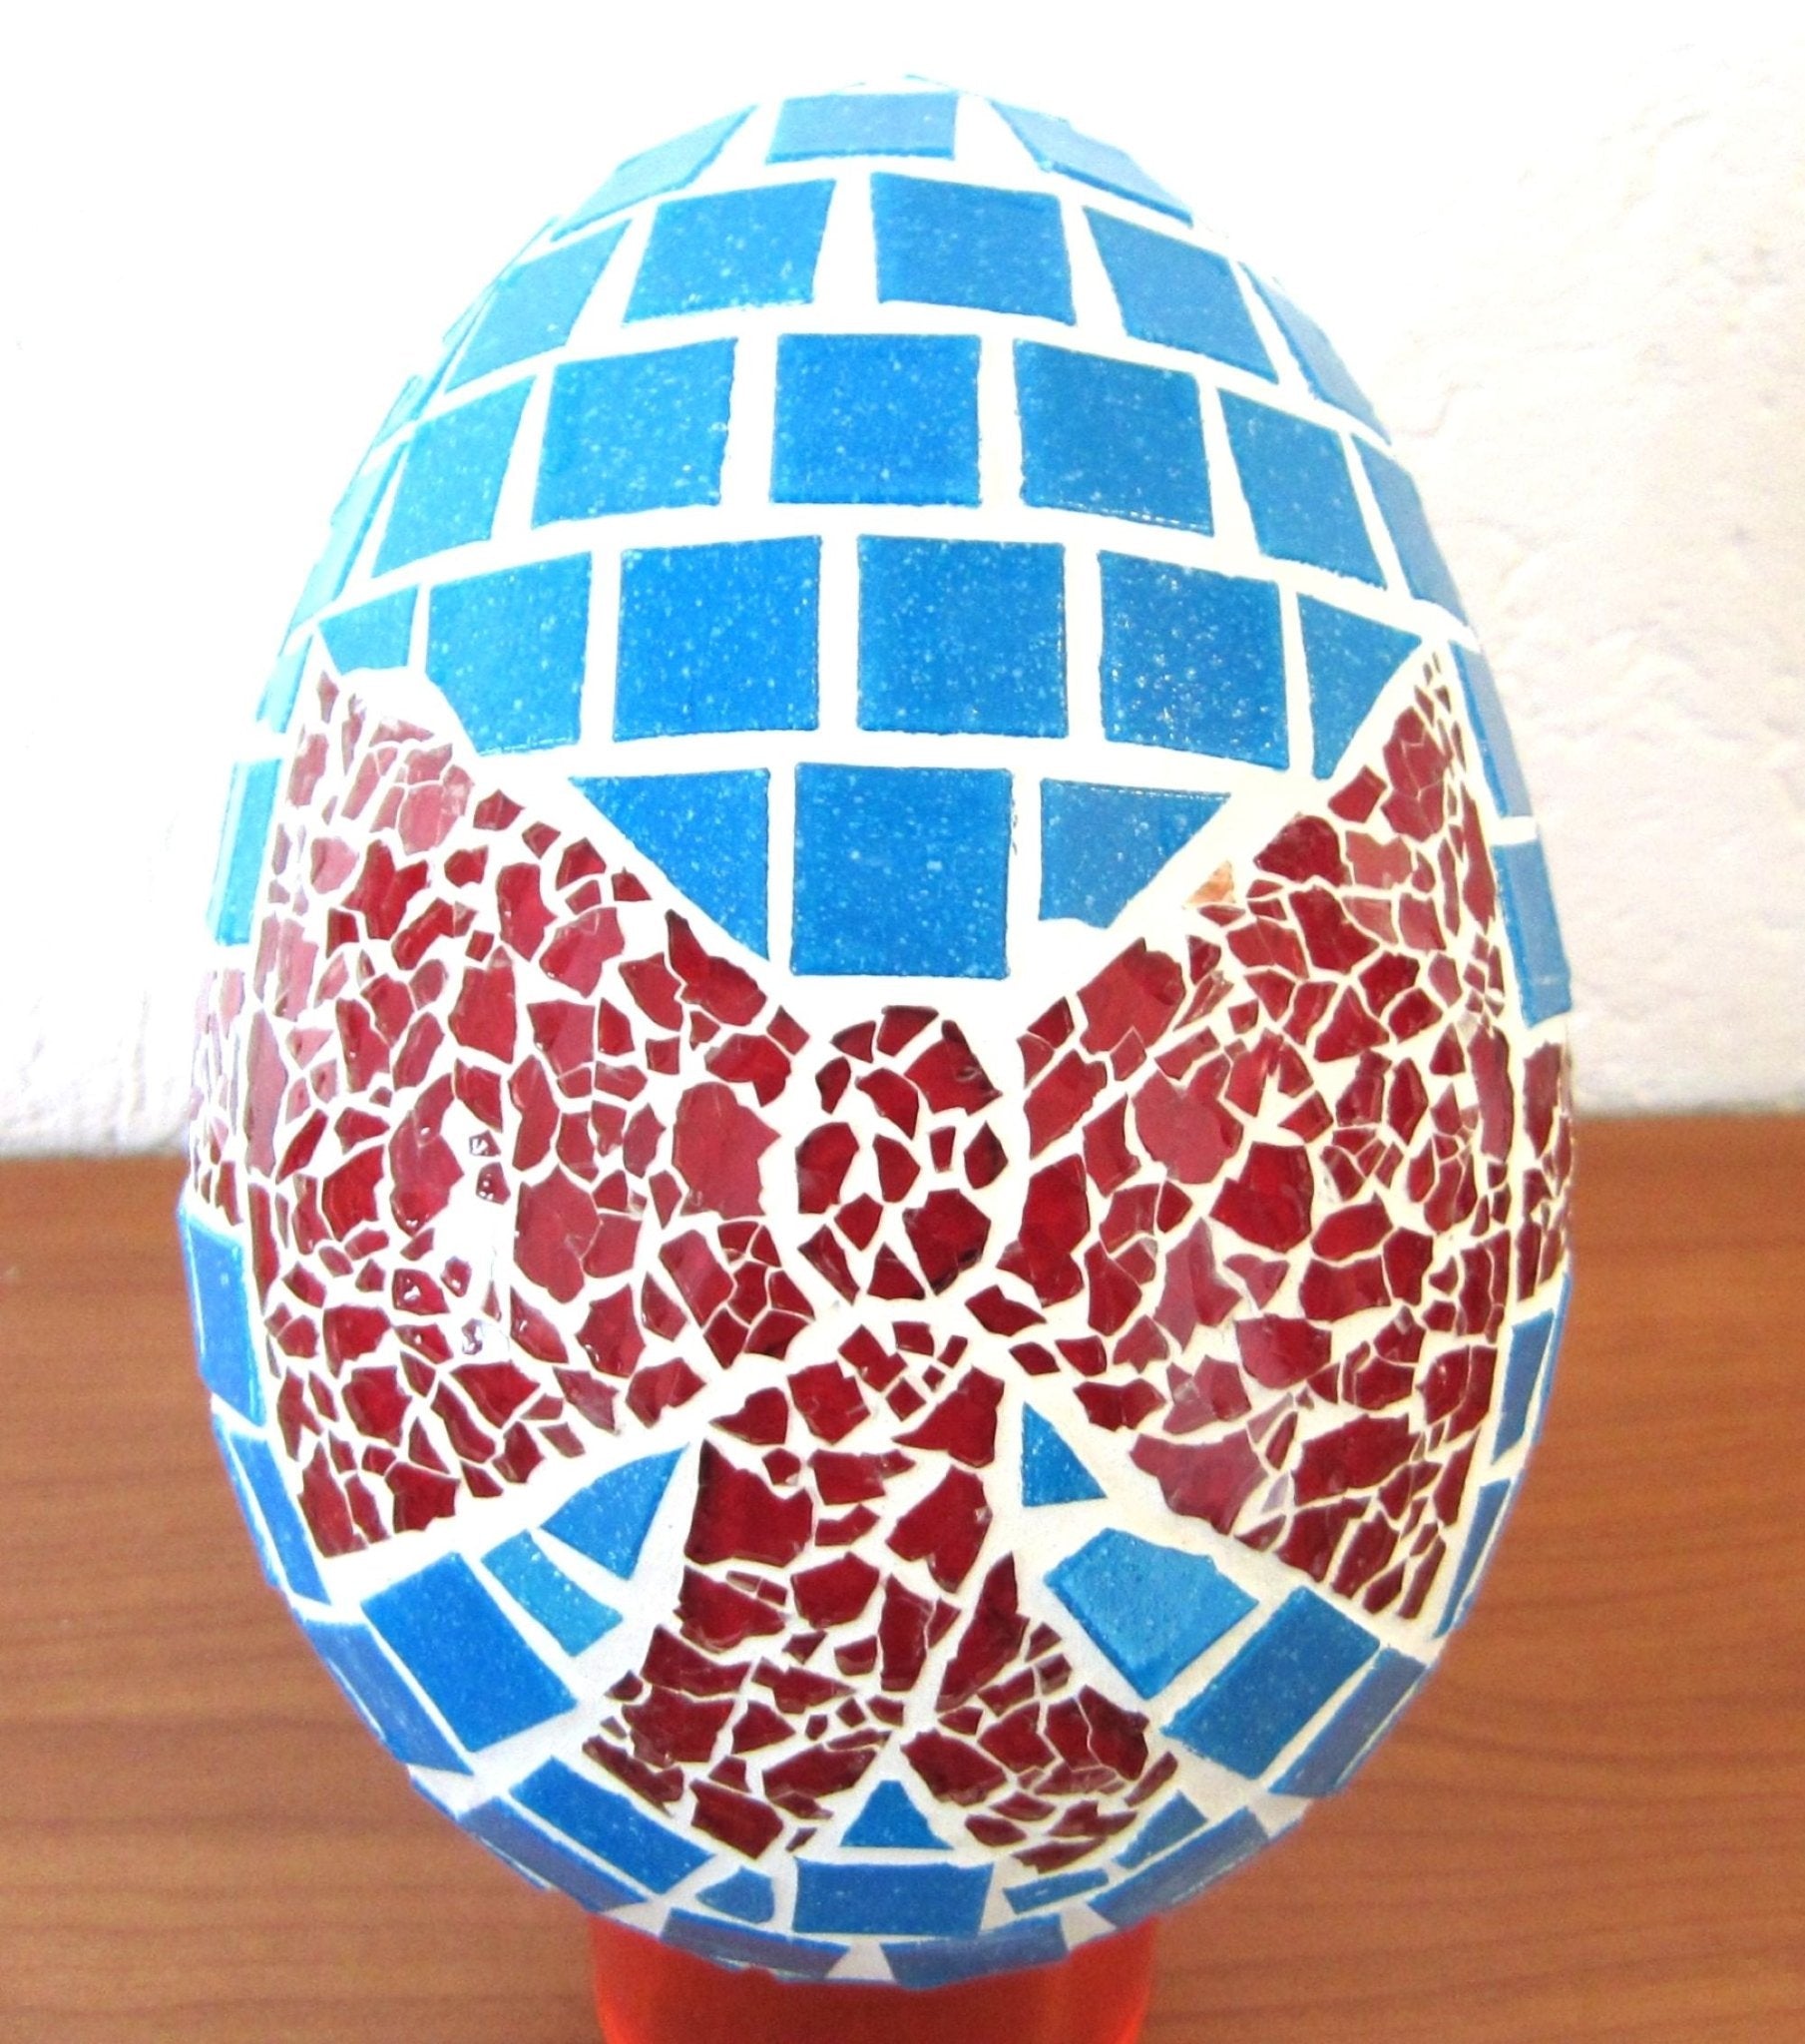 Handgemachtes Osterei blau oder grün mit Roter Schleife 20 cm hoch Mosaikei - Mosaikkasten Abverkauf blau